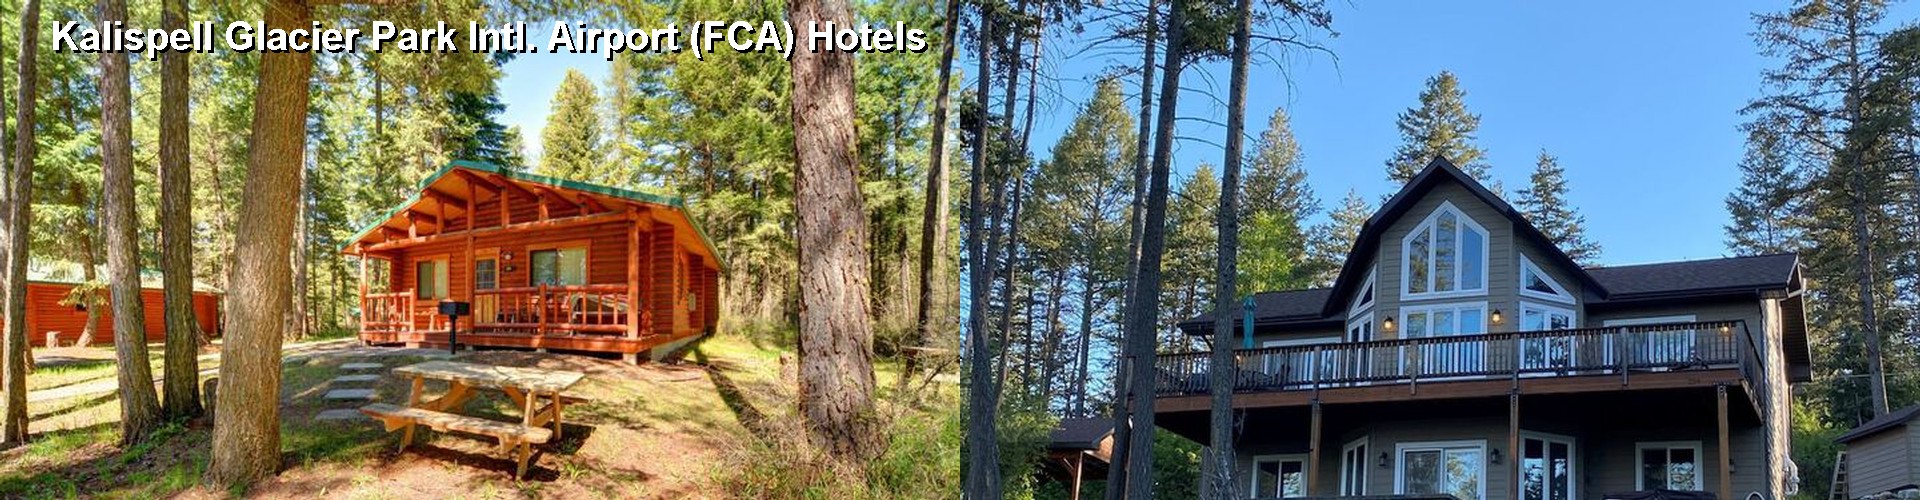 5 Best Hotels near Kalispell Glacier Park Intl. Airport (FCA)